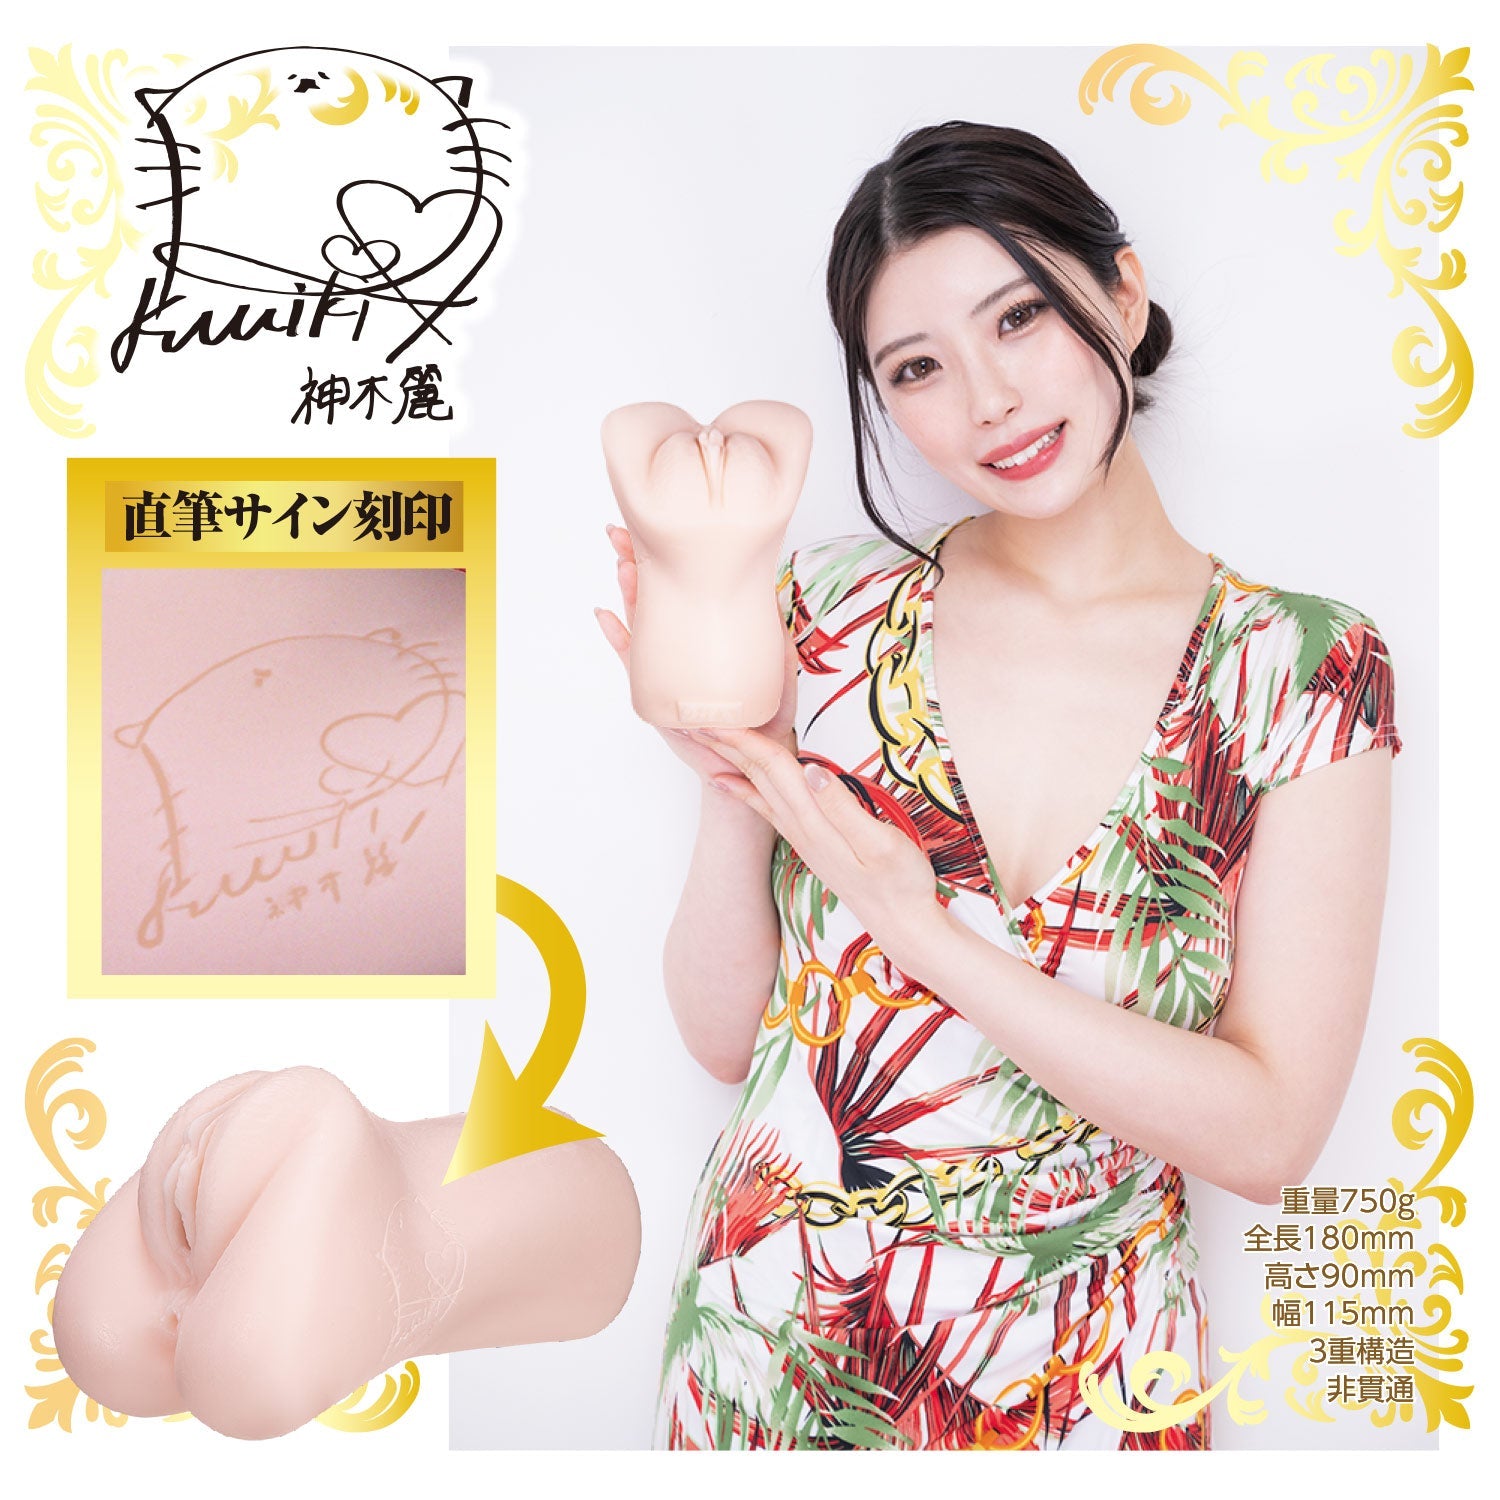 NPG - Triple Tightening Super Soft Pussy Meiki Rei Kamiki Onahole (สีเบจ)